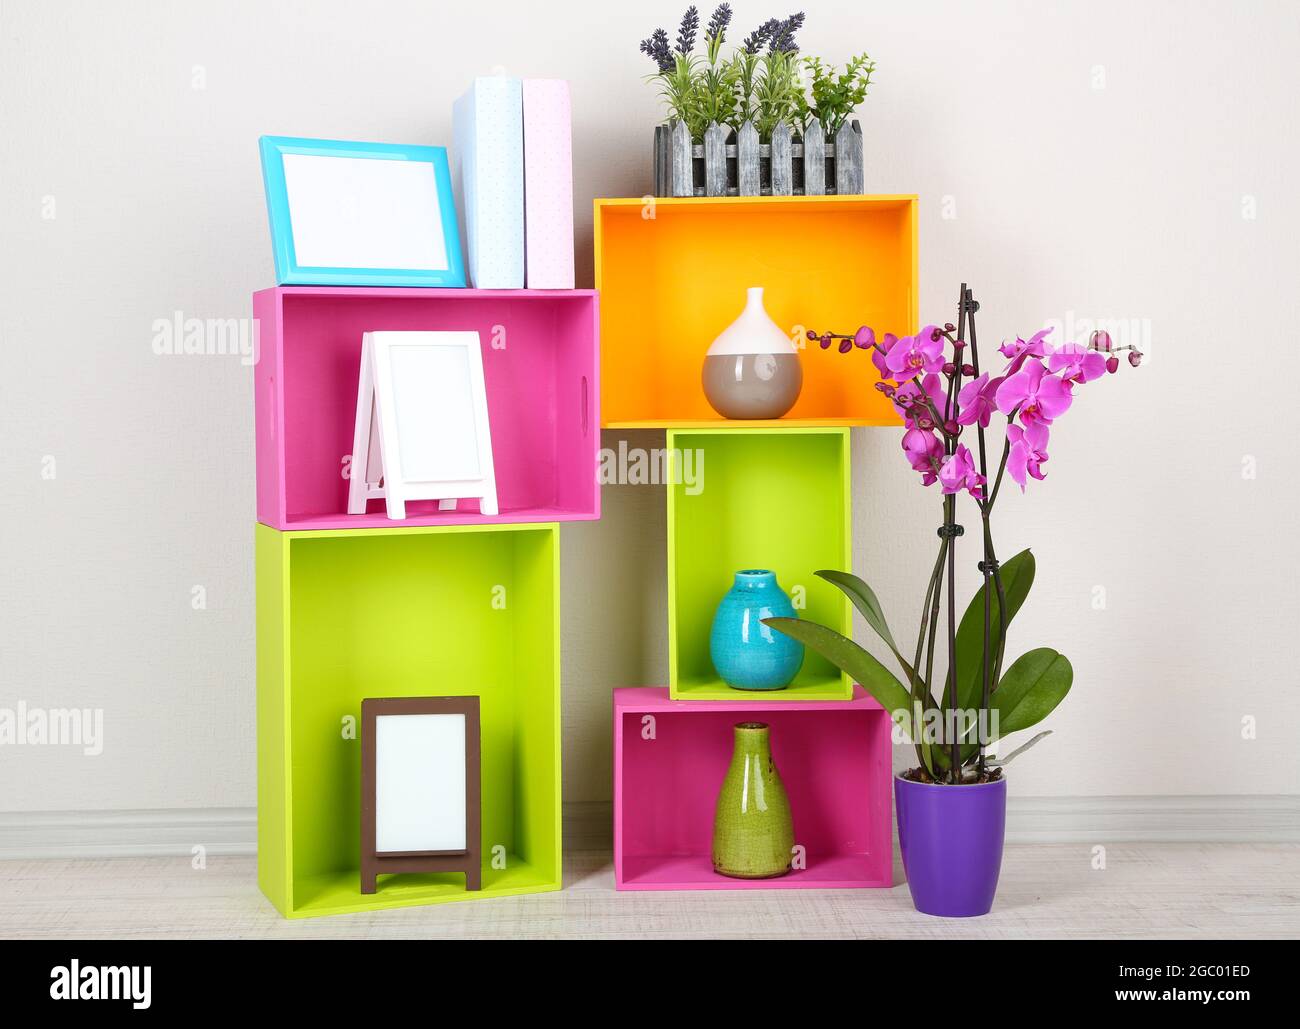 Schöne bunte Regale mit verschiedenen Objekten aus dem Hause  Stockfotografie - Alamy